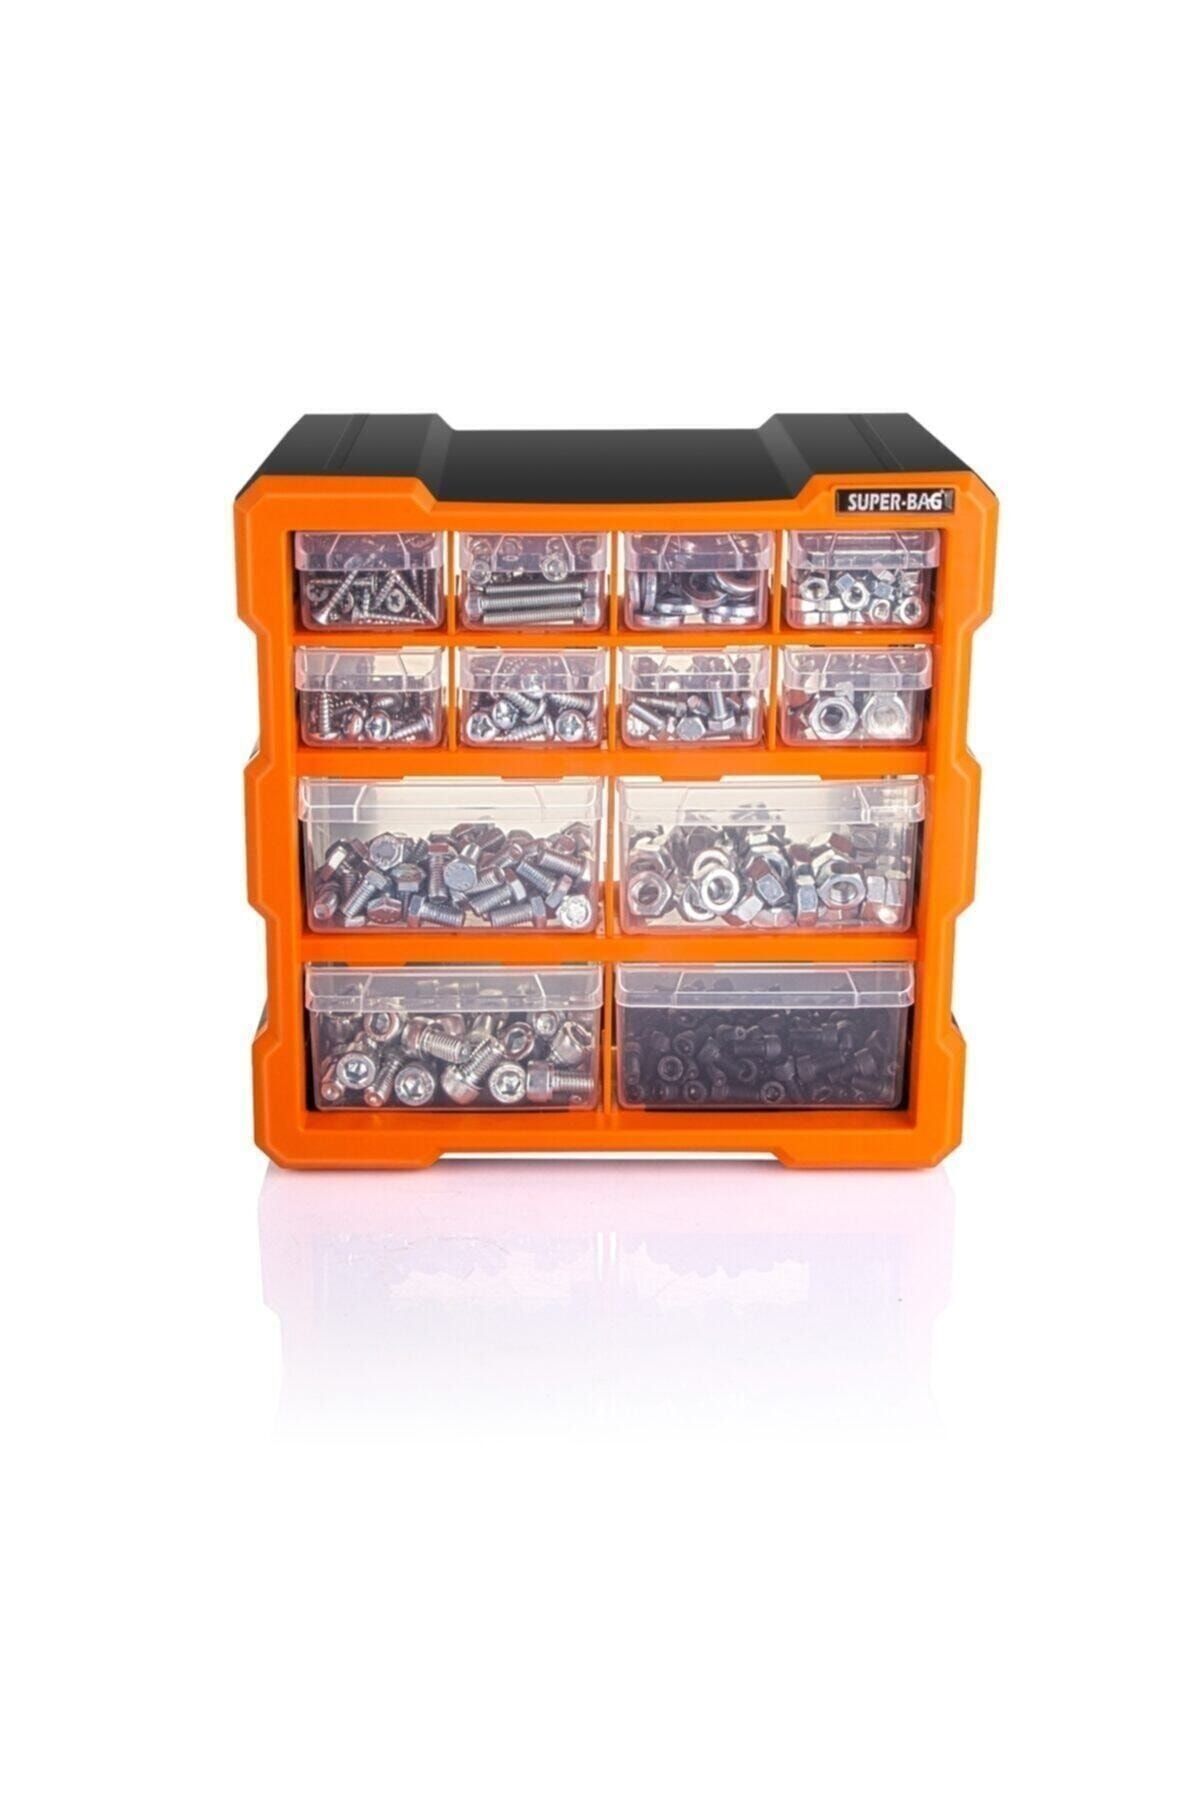 Genel Markalar Süper Bag Mono Blok Çekmece Seti 12'li Hobby Organizer Seti Monoblok Çekmece Takı Vida Dübel Kutusu